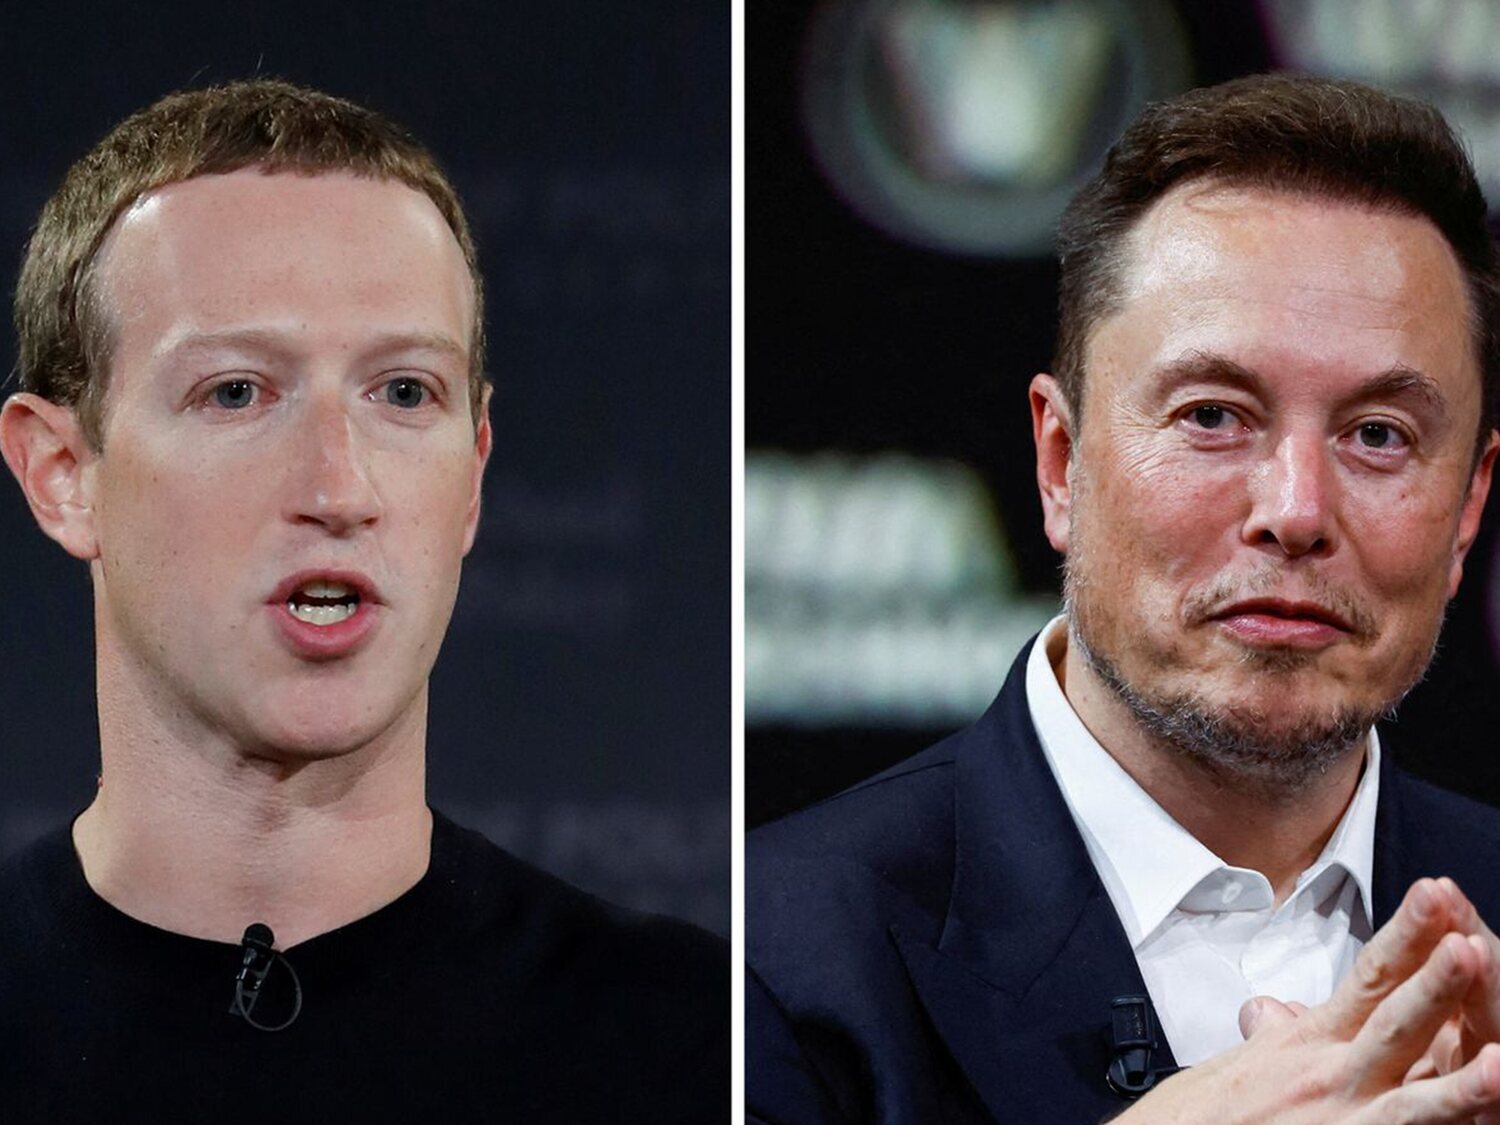 Ver la pelea de Elon Musk vs Mark Zuckerberg costaría 100 dólares